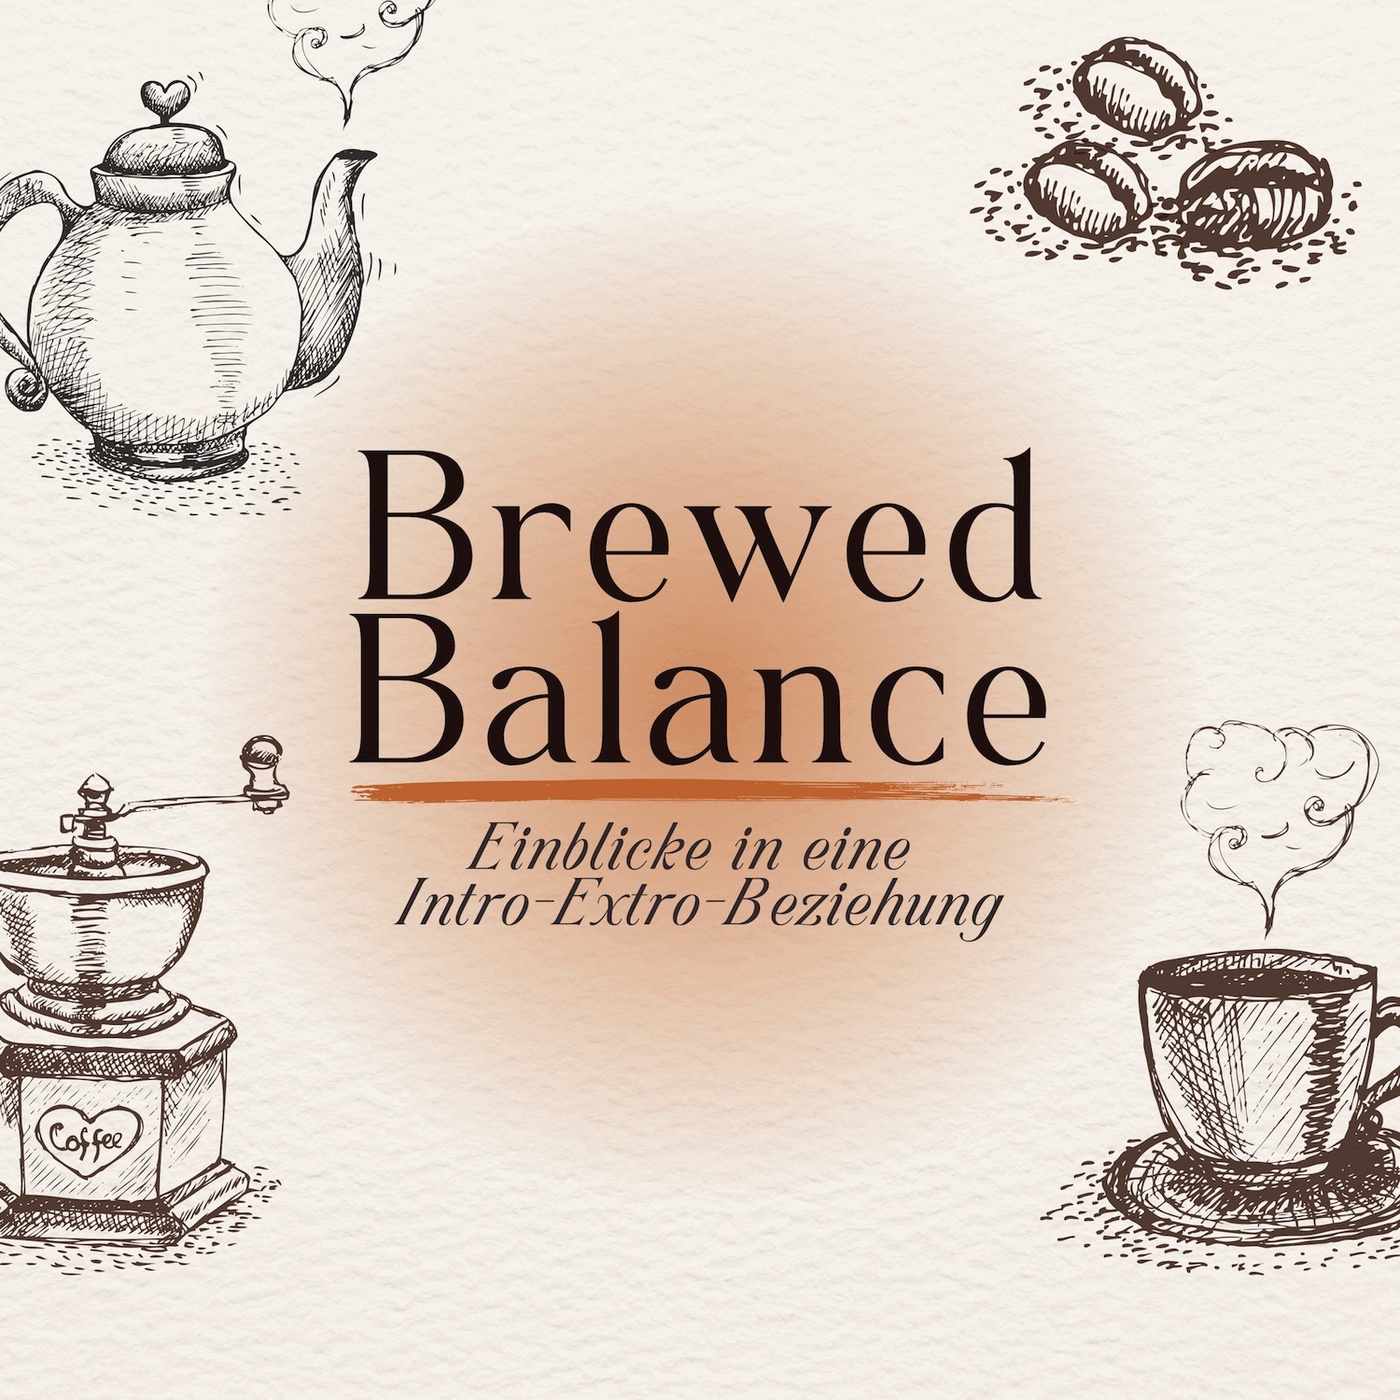 Brewed Balance: Einblicke in eine Intro-Extro-Beziehung